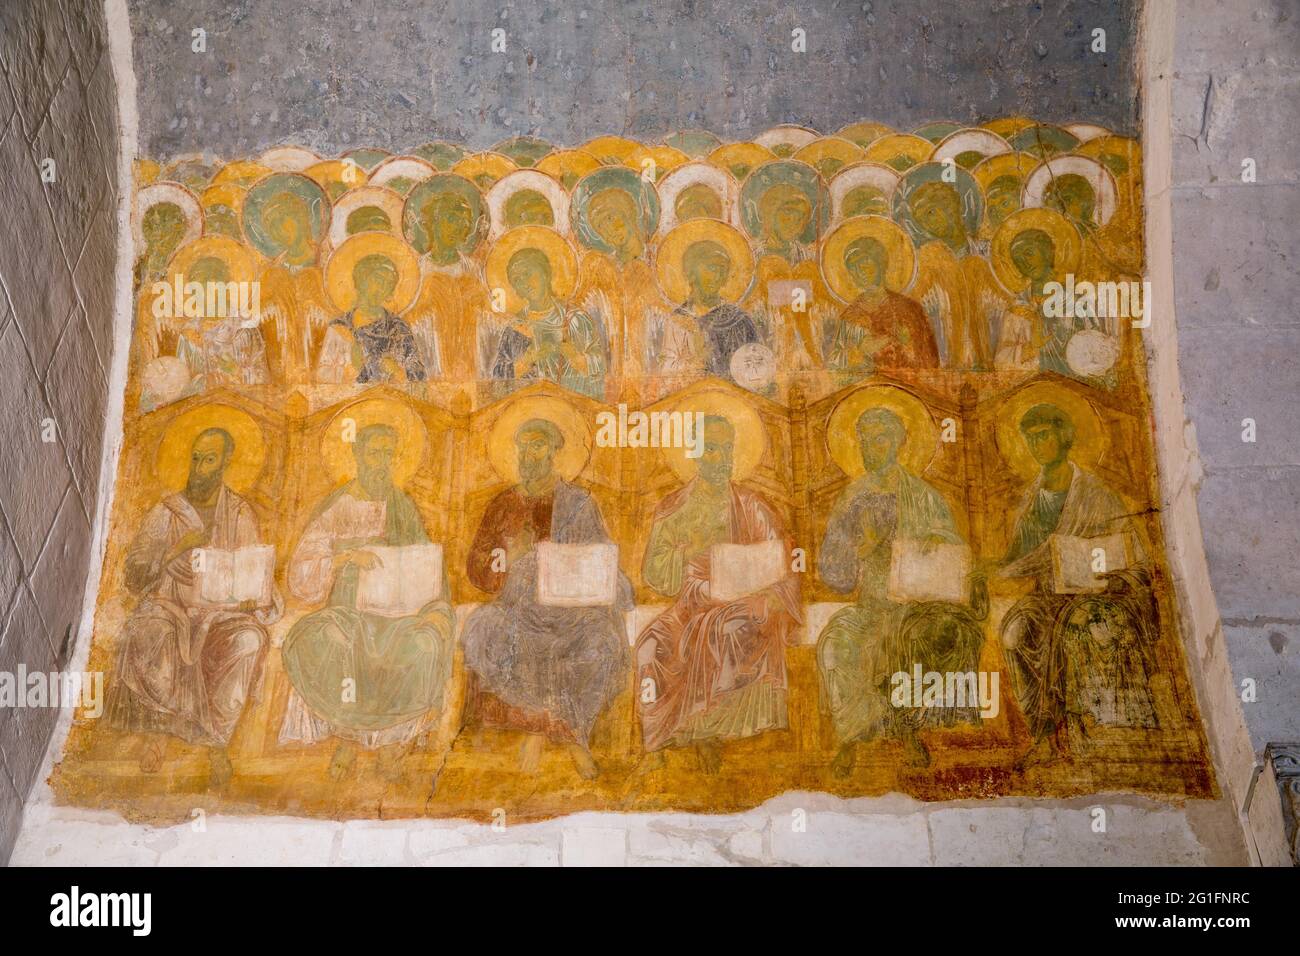 Un fresco de la Catedral de Dmitrievsky en Vladimir (la parte norte del arco), los apóstoles son representados: Pablo, Mateo, Marcos, Simón, Santiago Foto de stock